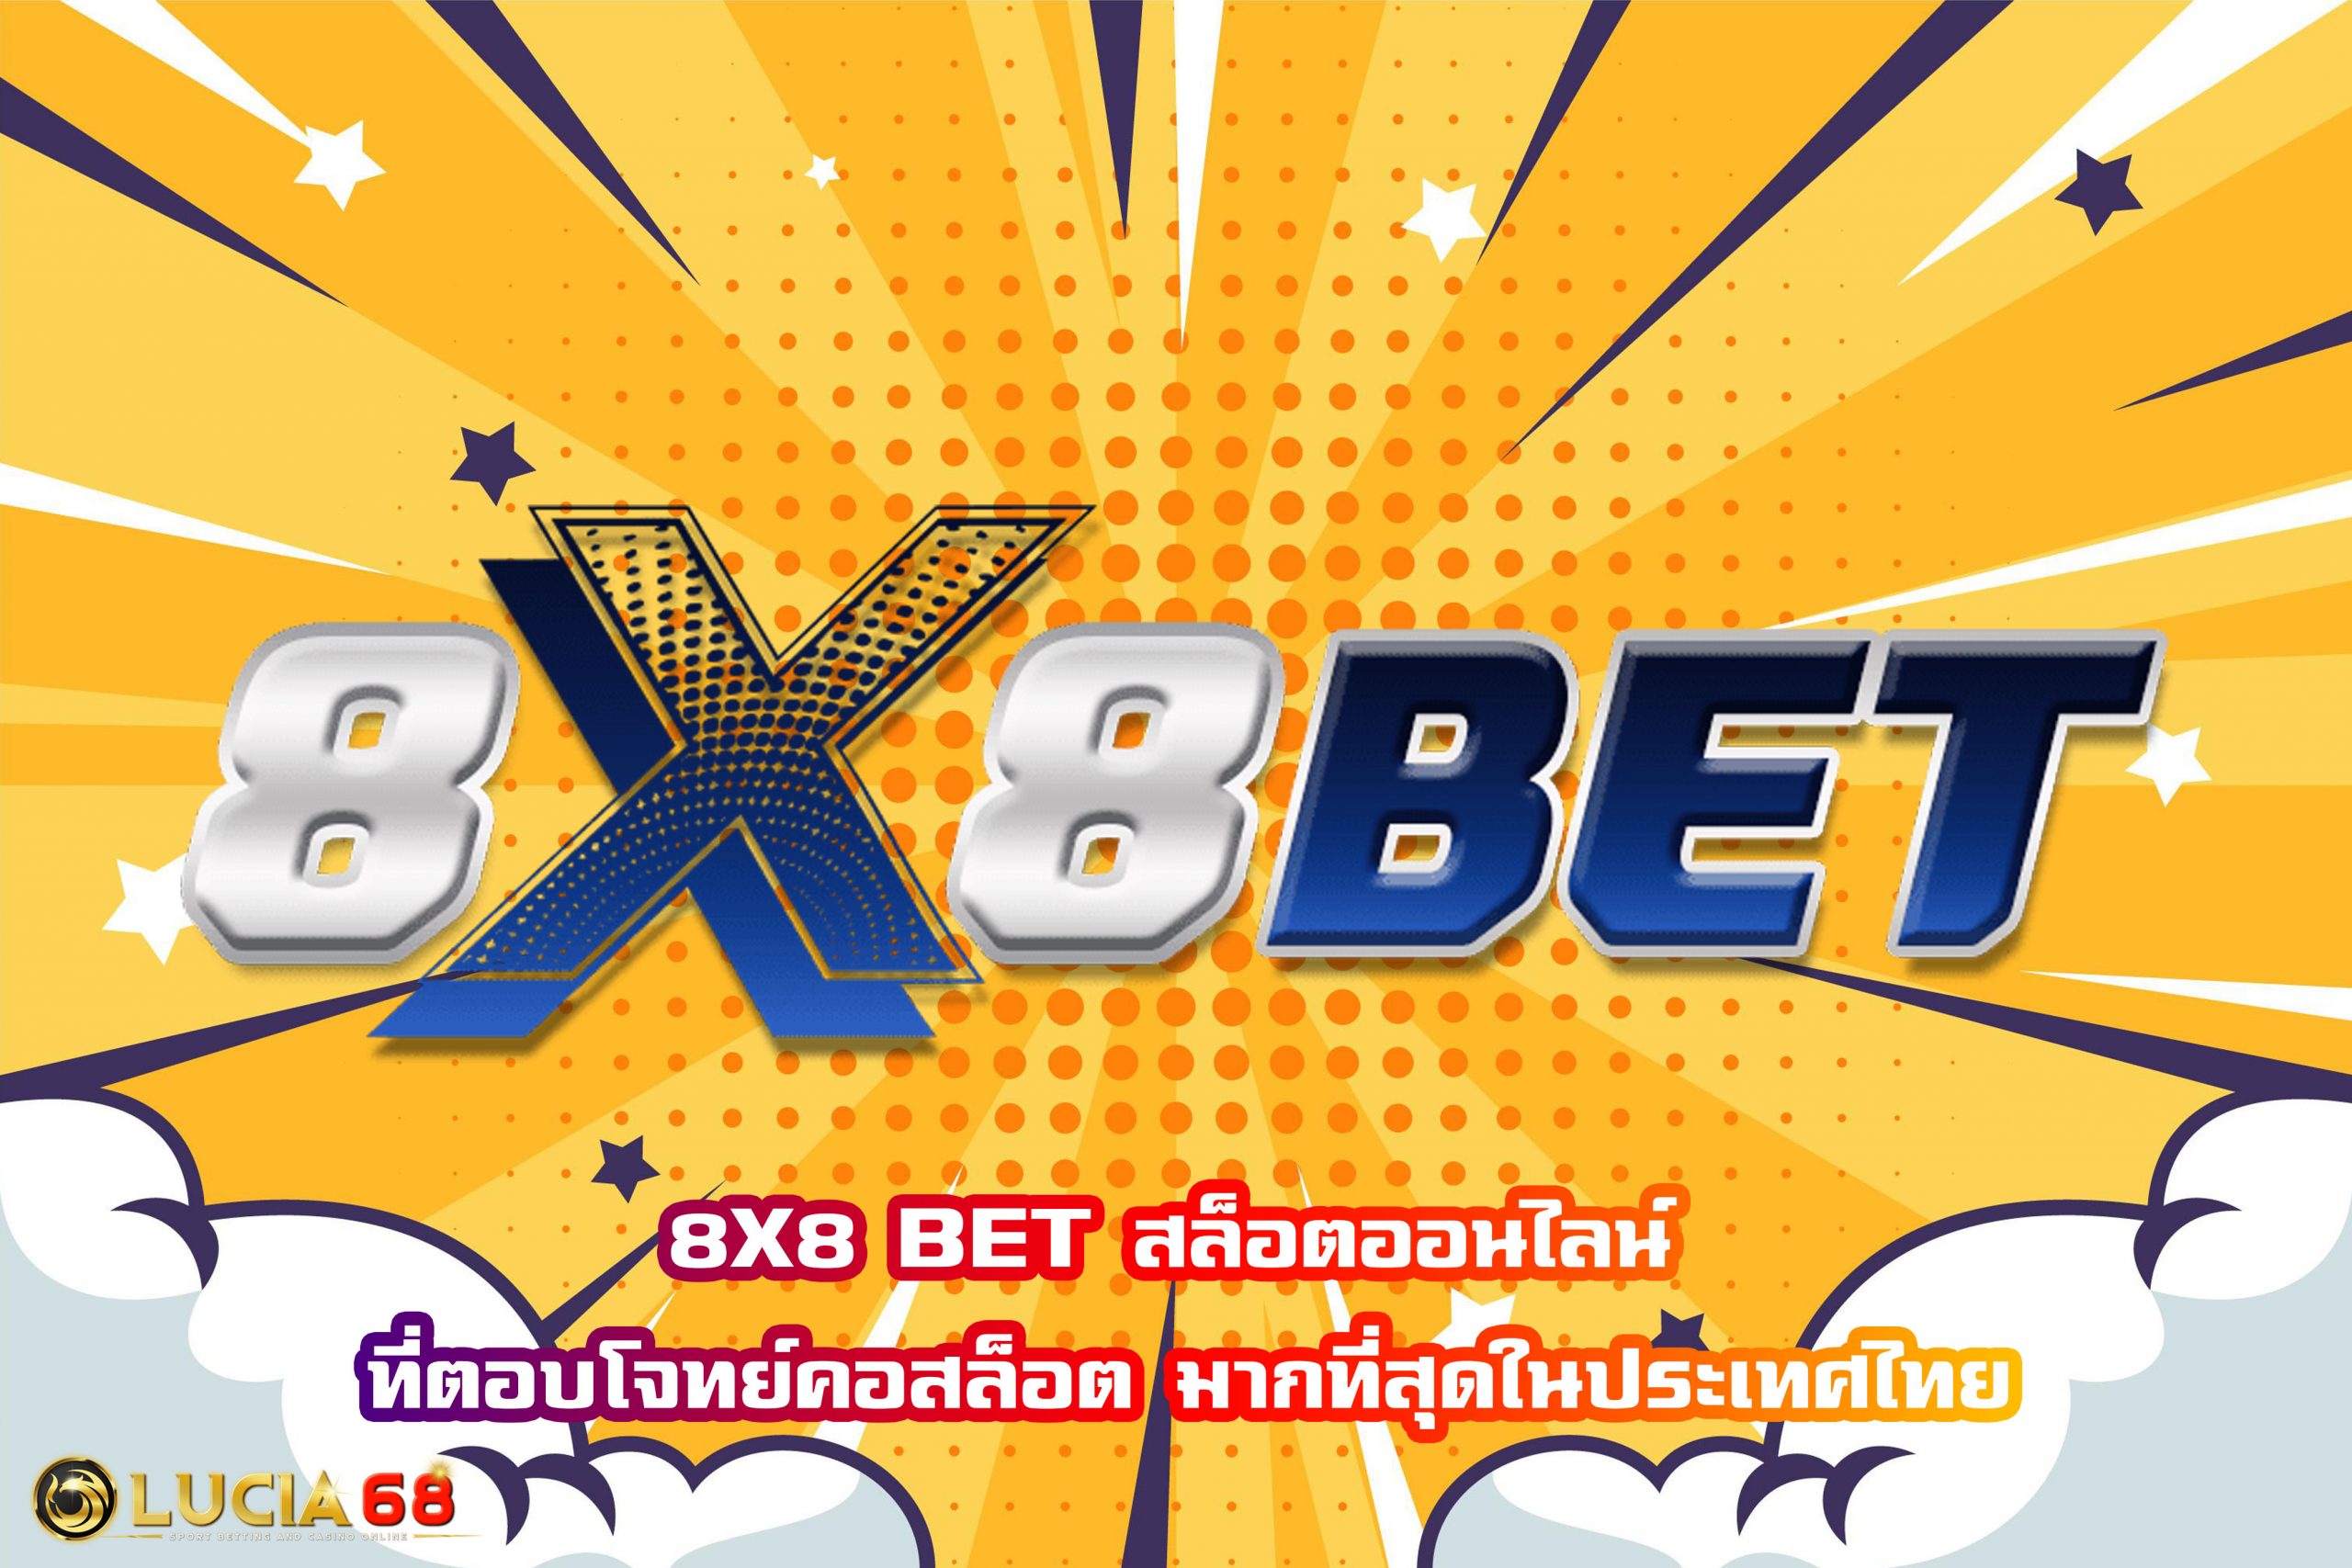 8X8 BET สล็อตออนไลน์ ที่ตอบโจทย์คอสล็อต มากที่สุดในประเทศไทย